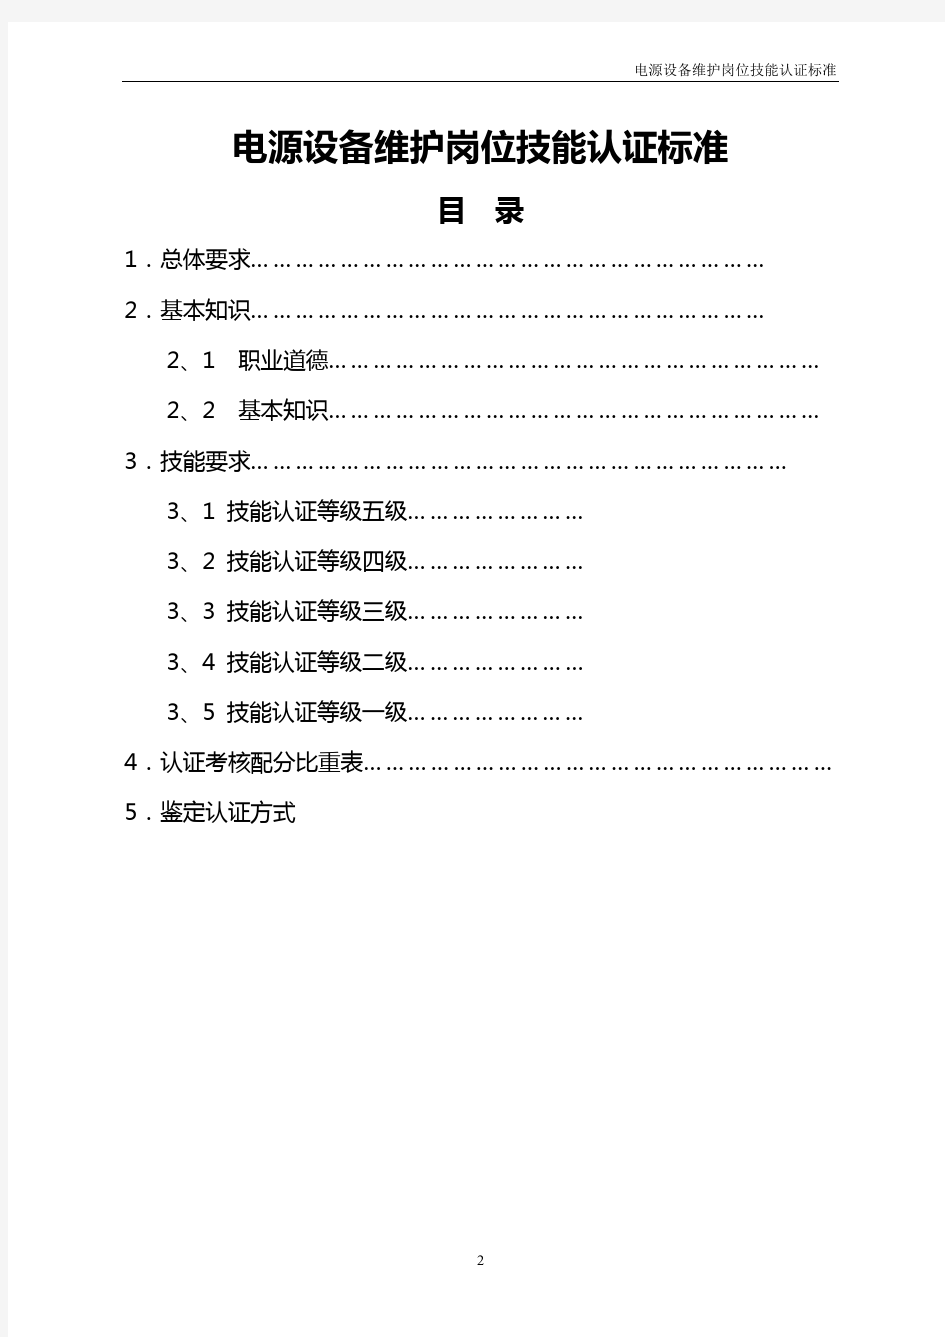 中国电信岗位考试-电源专业(设备维护)认证标准(20040818)